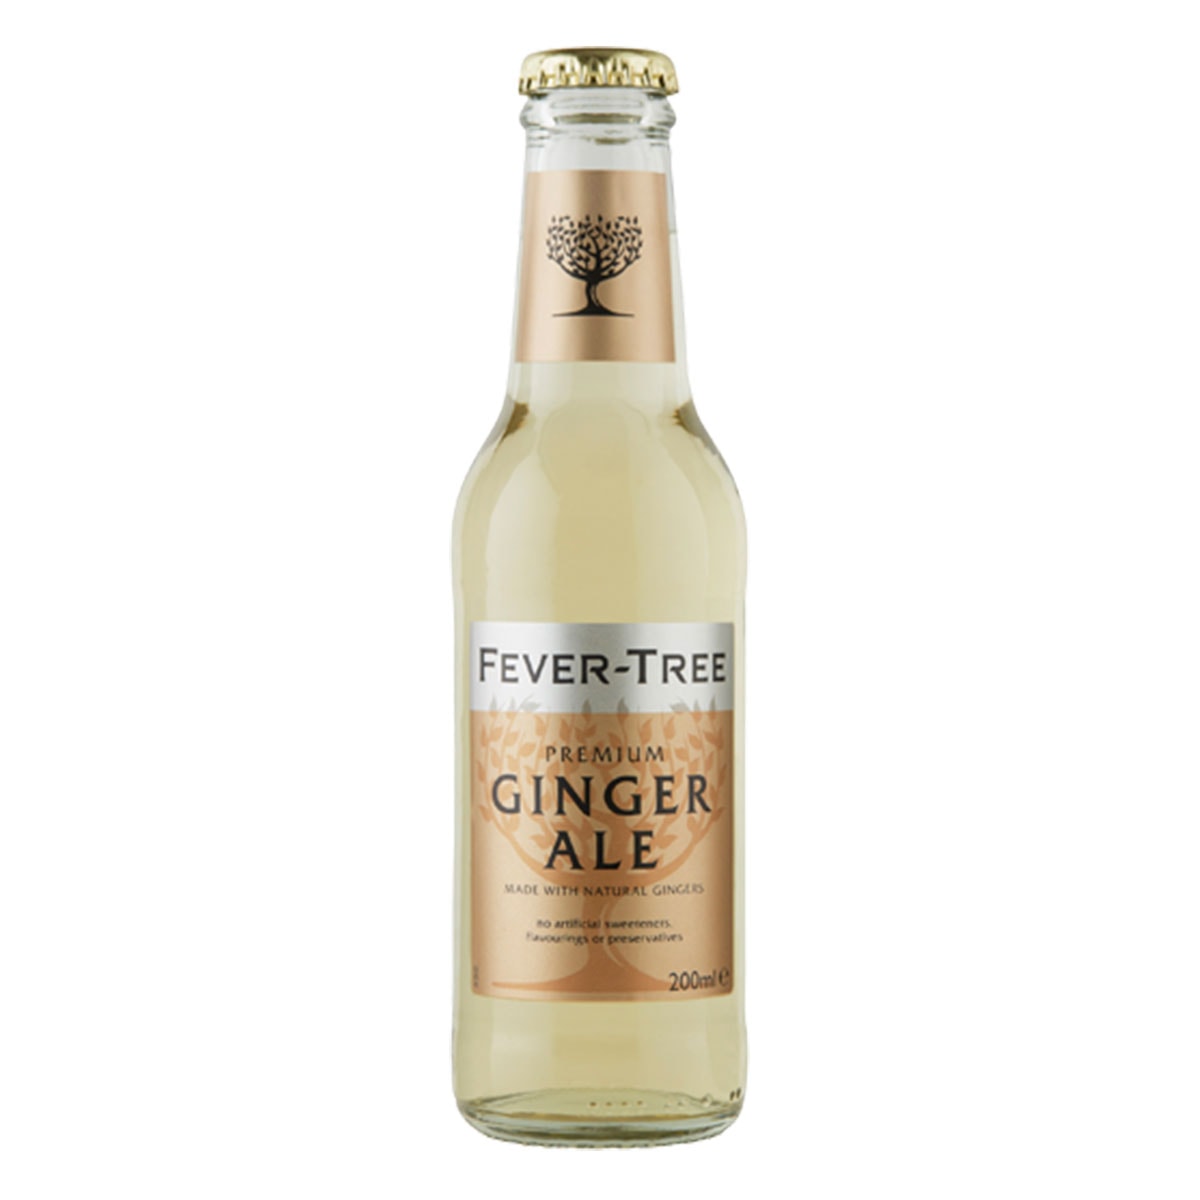 ginger ale 200ml bottle Fever-tree